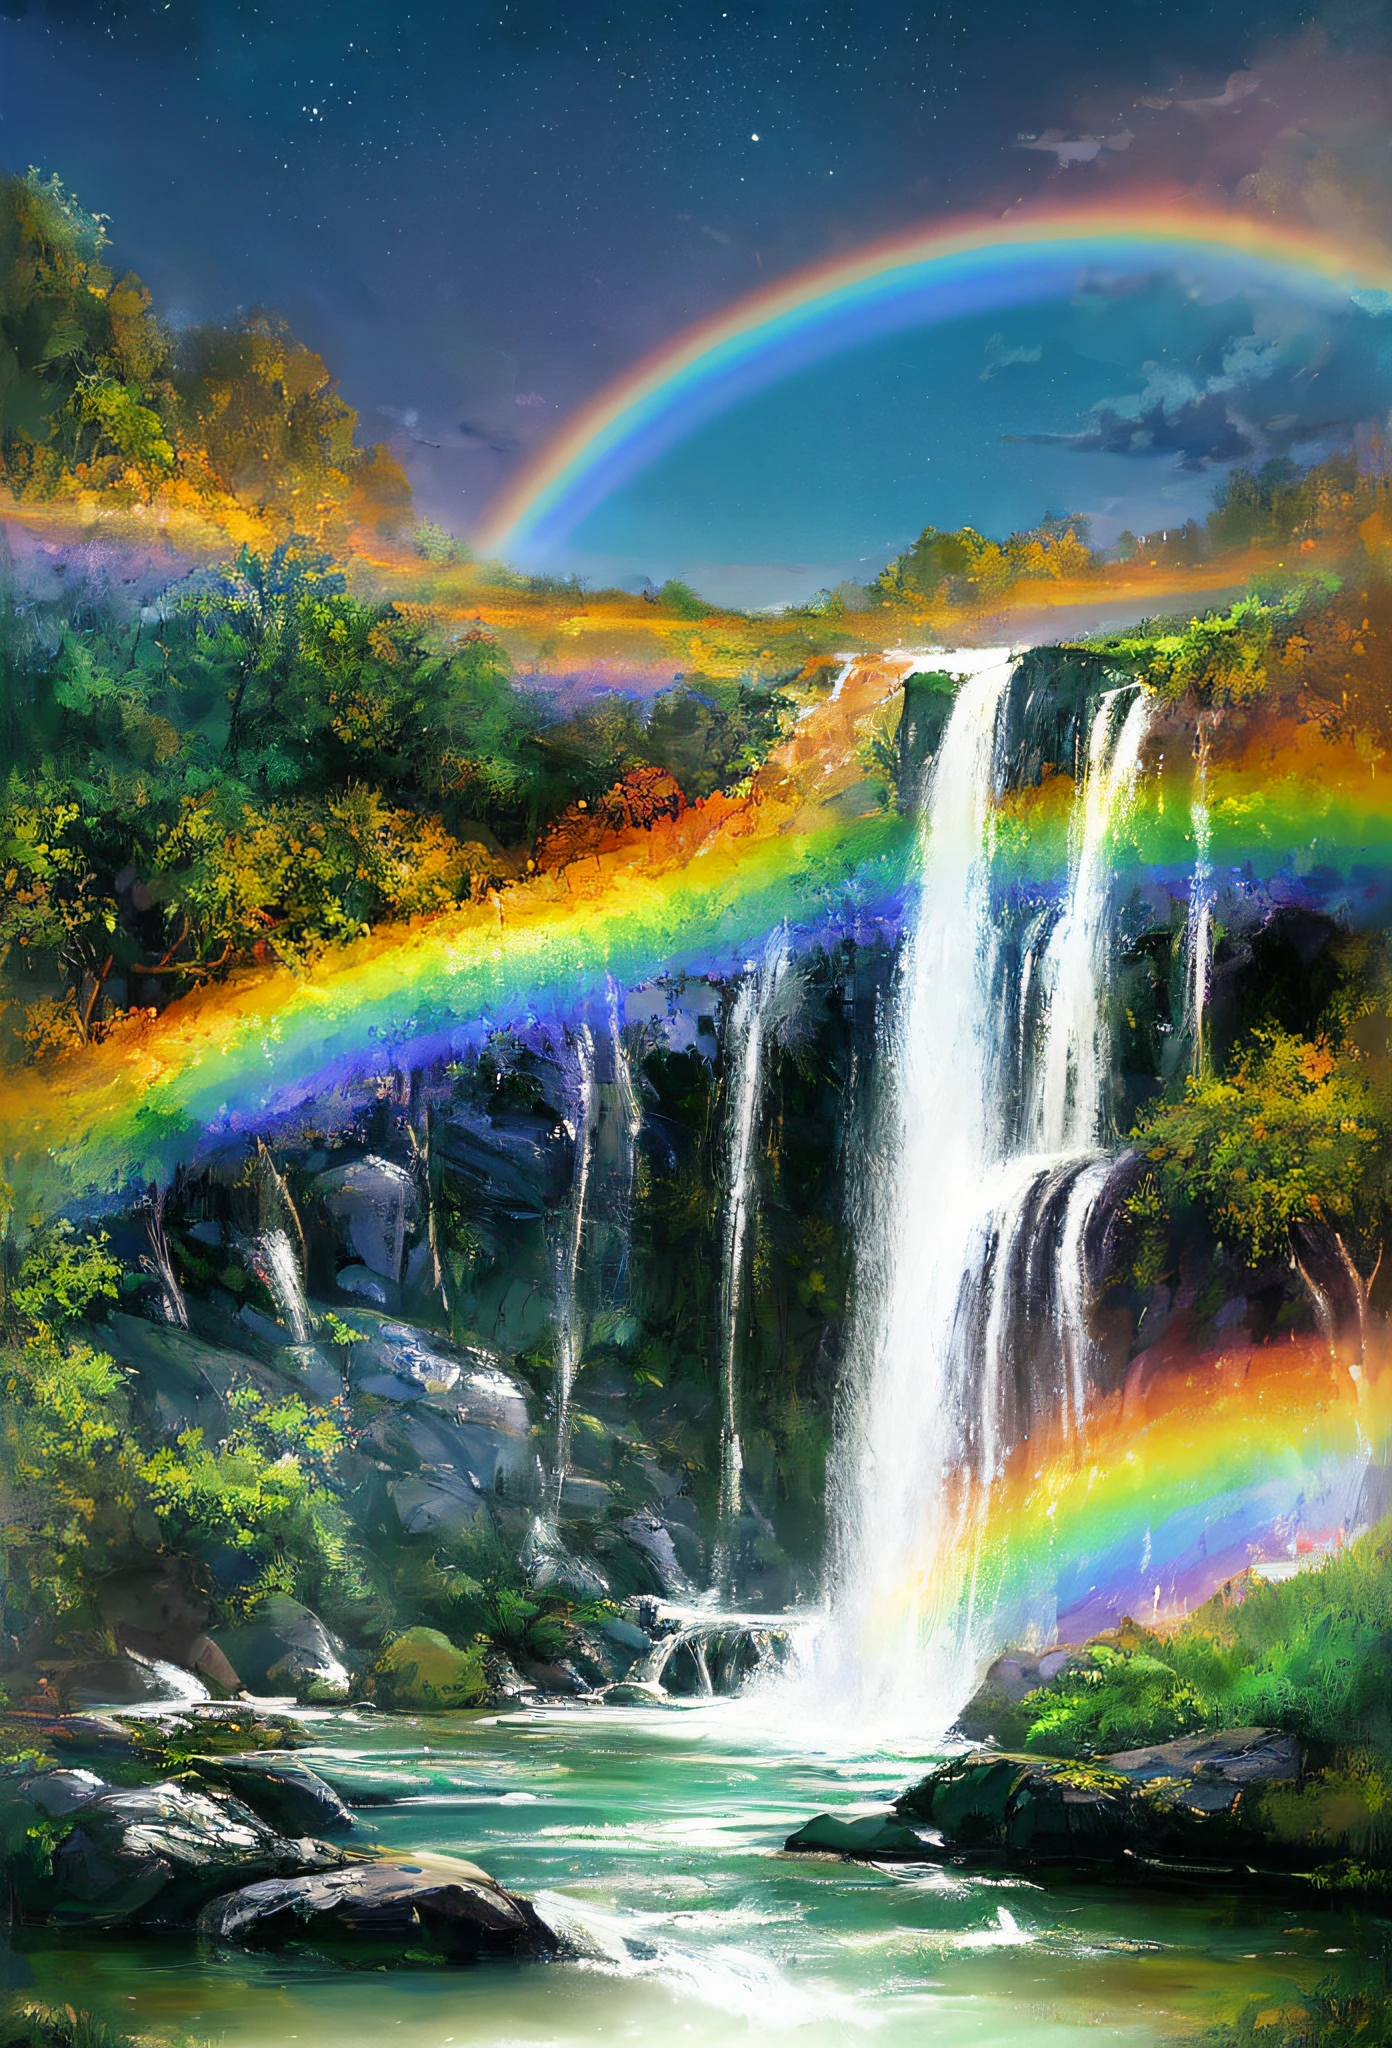 ((最高品質)), ((傑作)), ((超リアル)), ((夜)), アートステーションで話題の、虹の滝を描いた受賞作品のソフトオイル絵画,